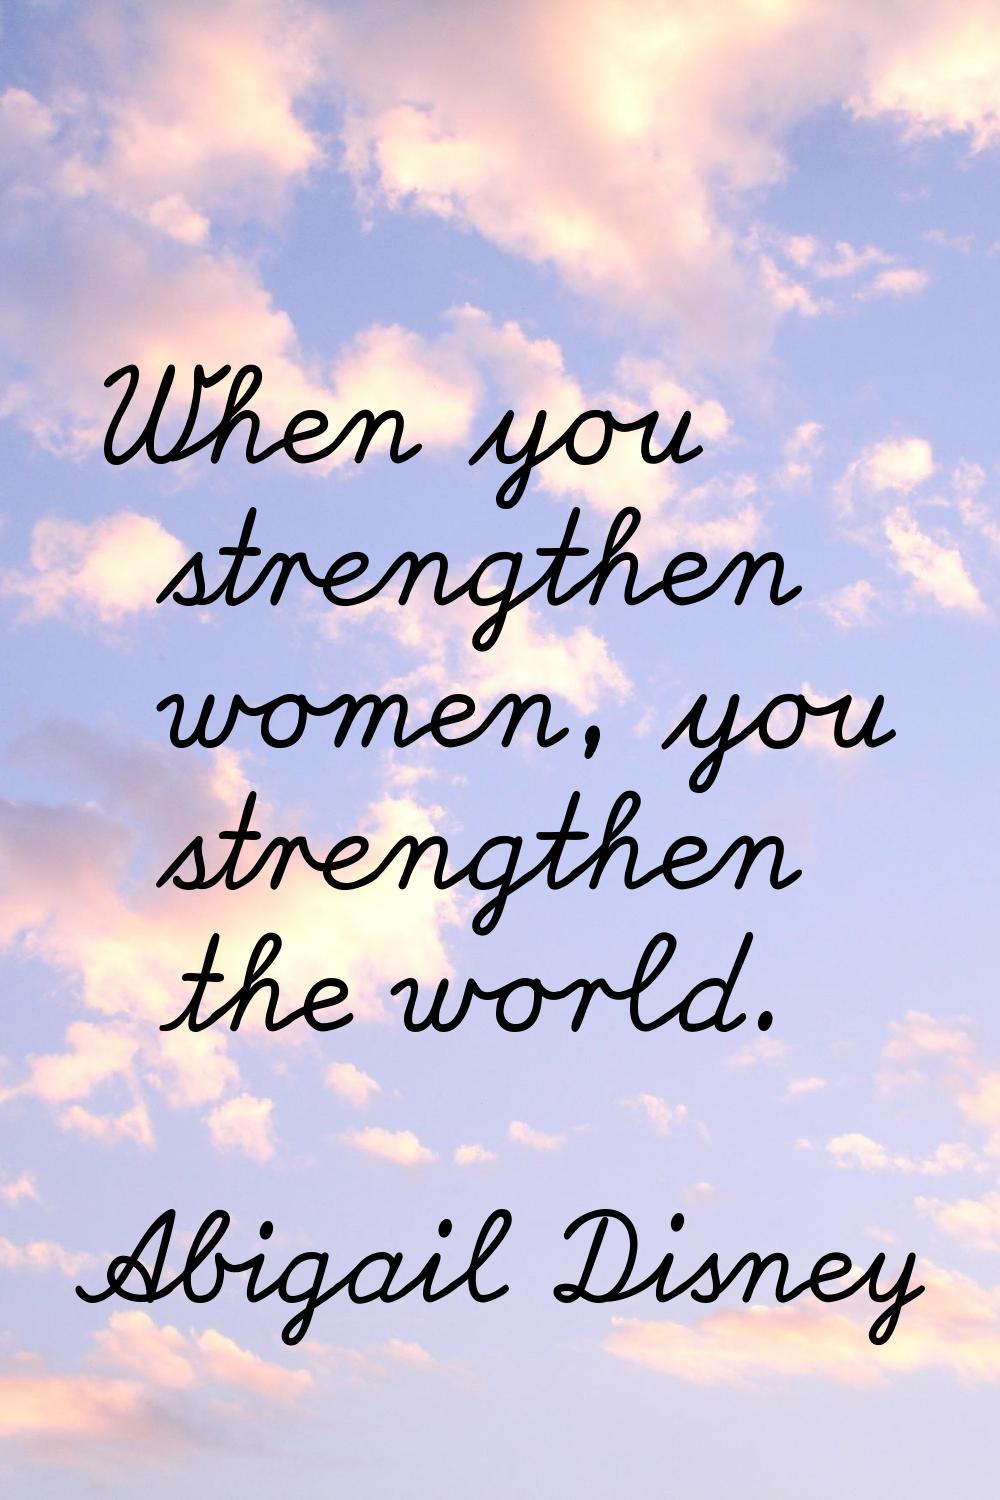 When you strengthen women, you strengthen the world.